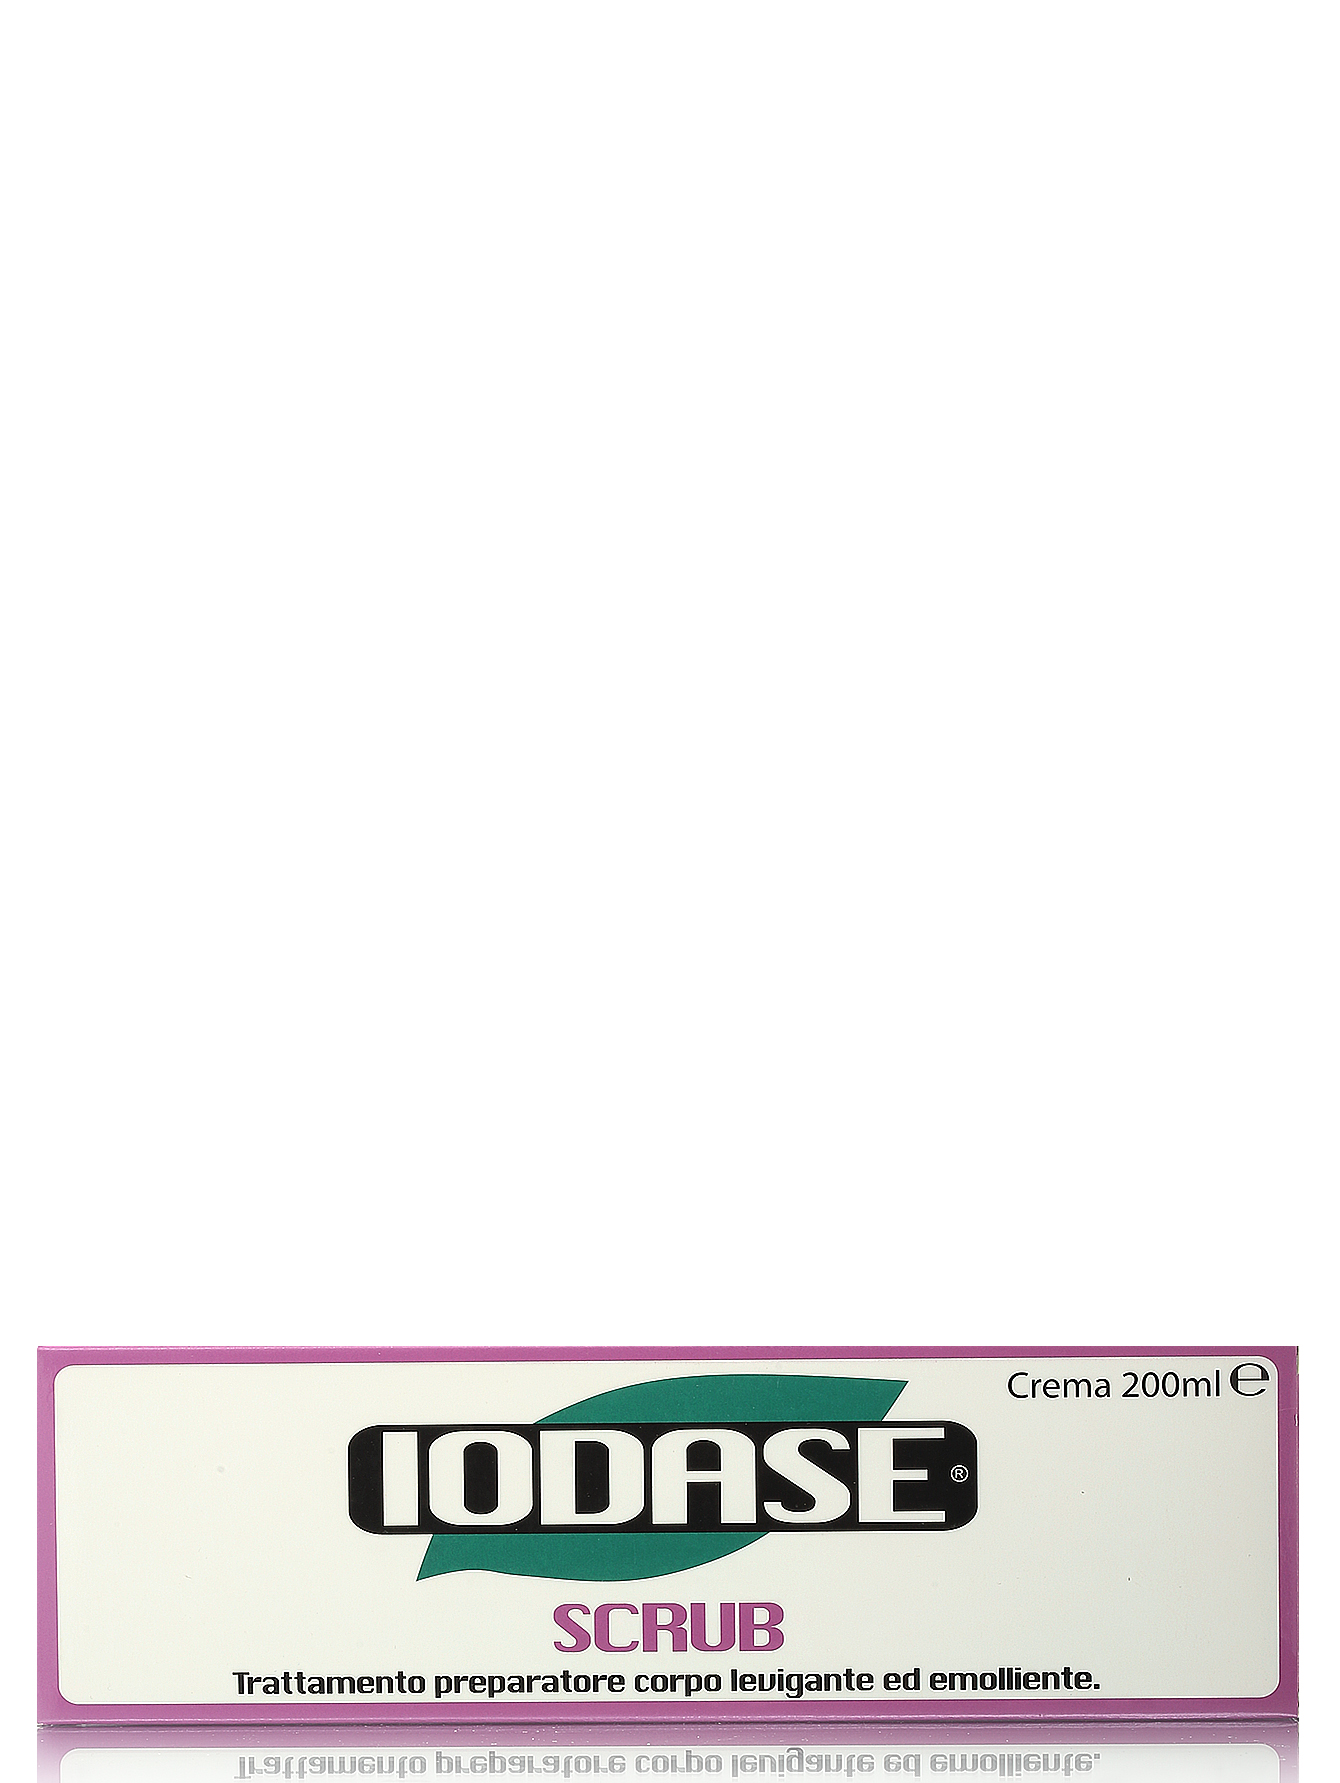  Крем-скраб для тела "Iodase Scrub" - Body Care, 200ml - Модель Верх-Низ